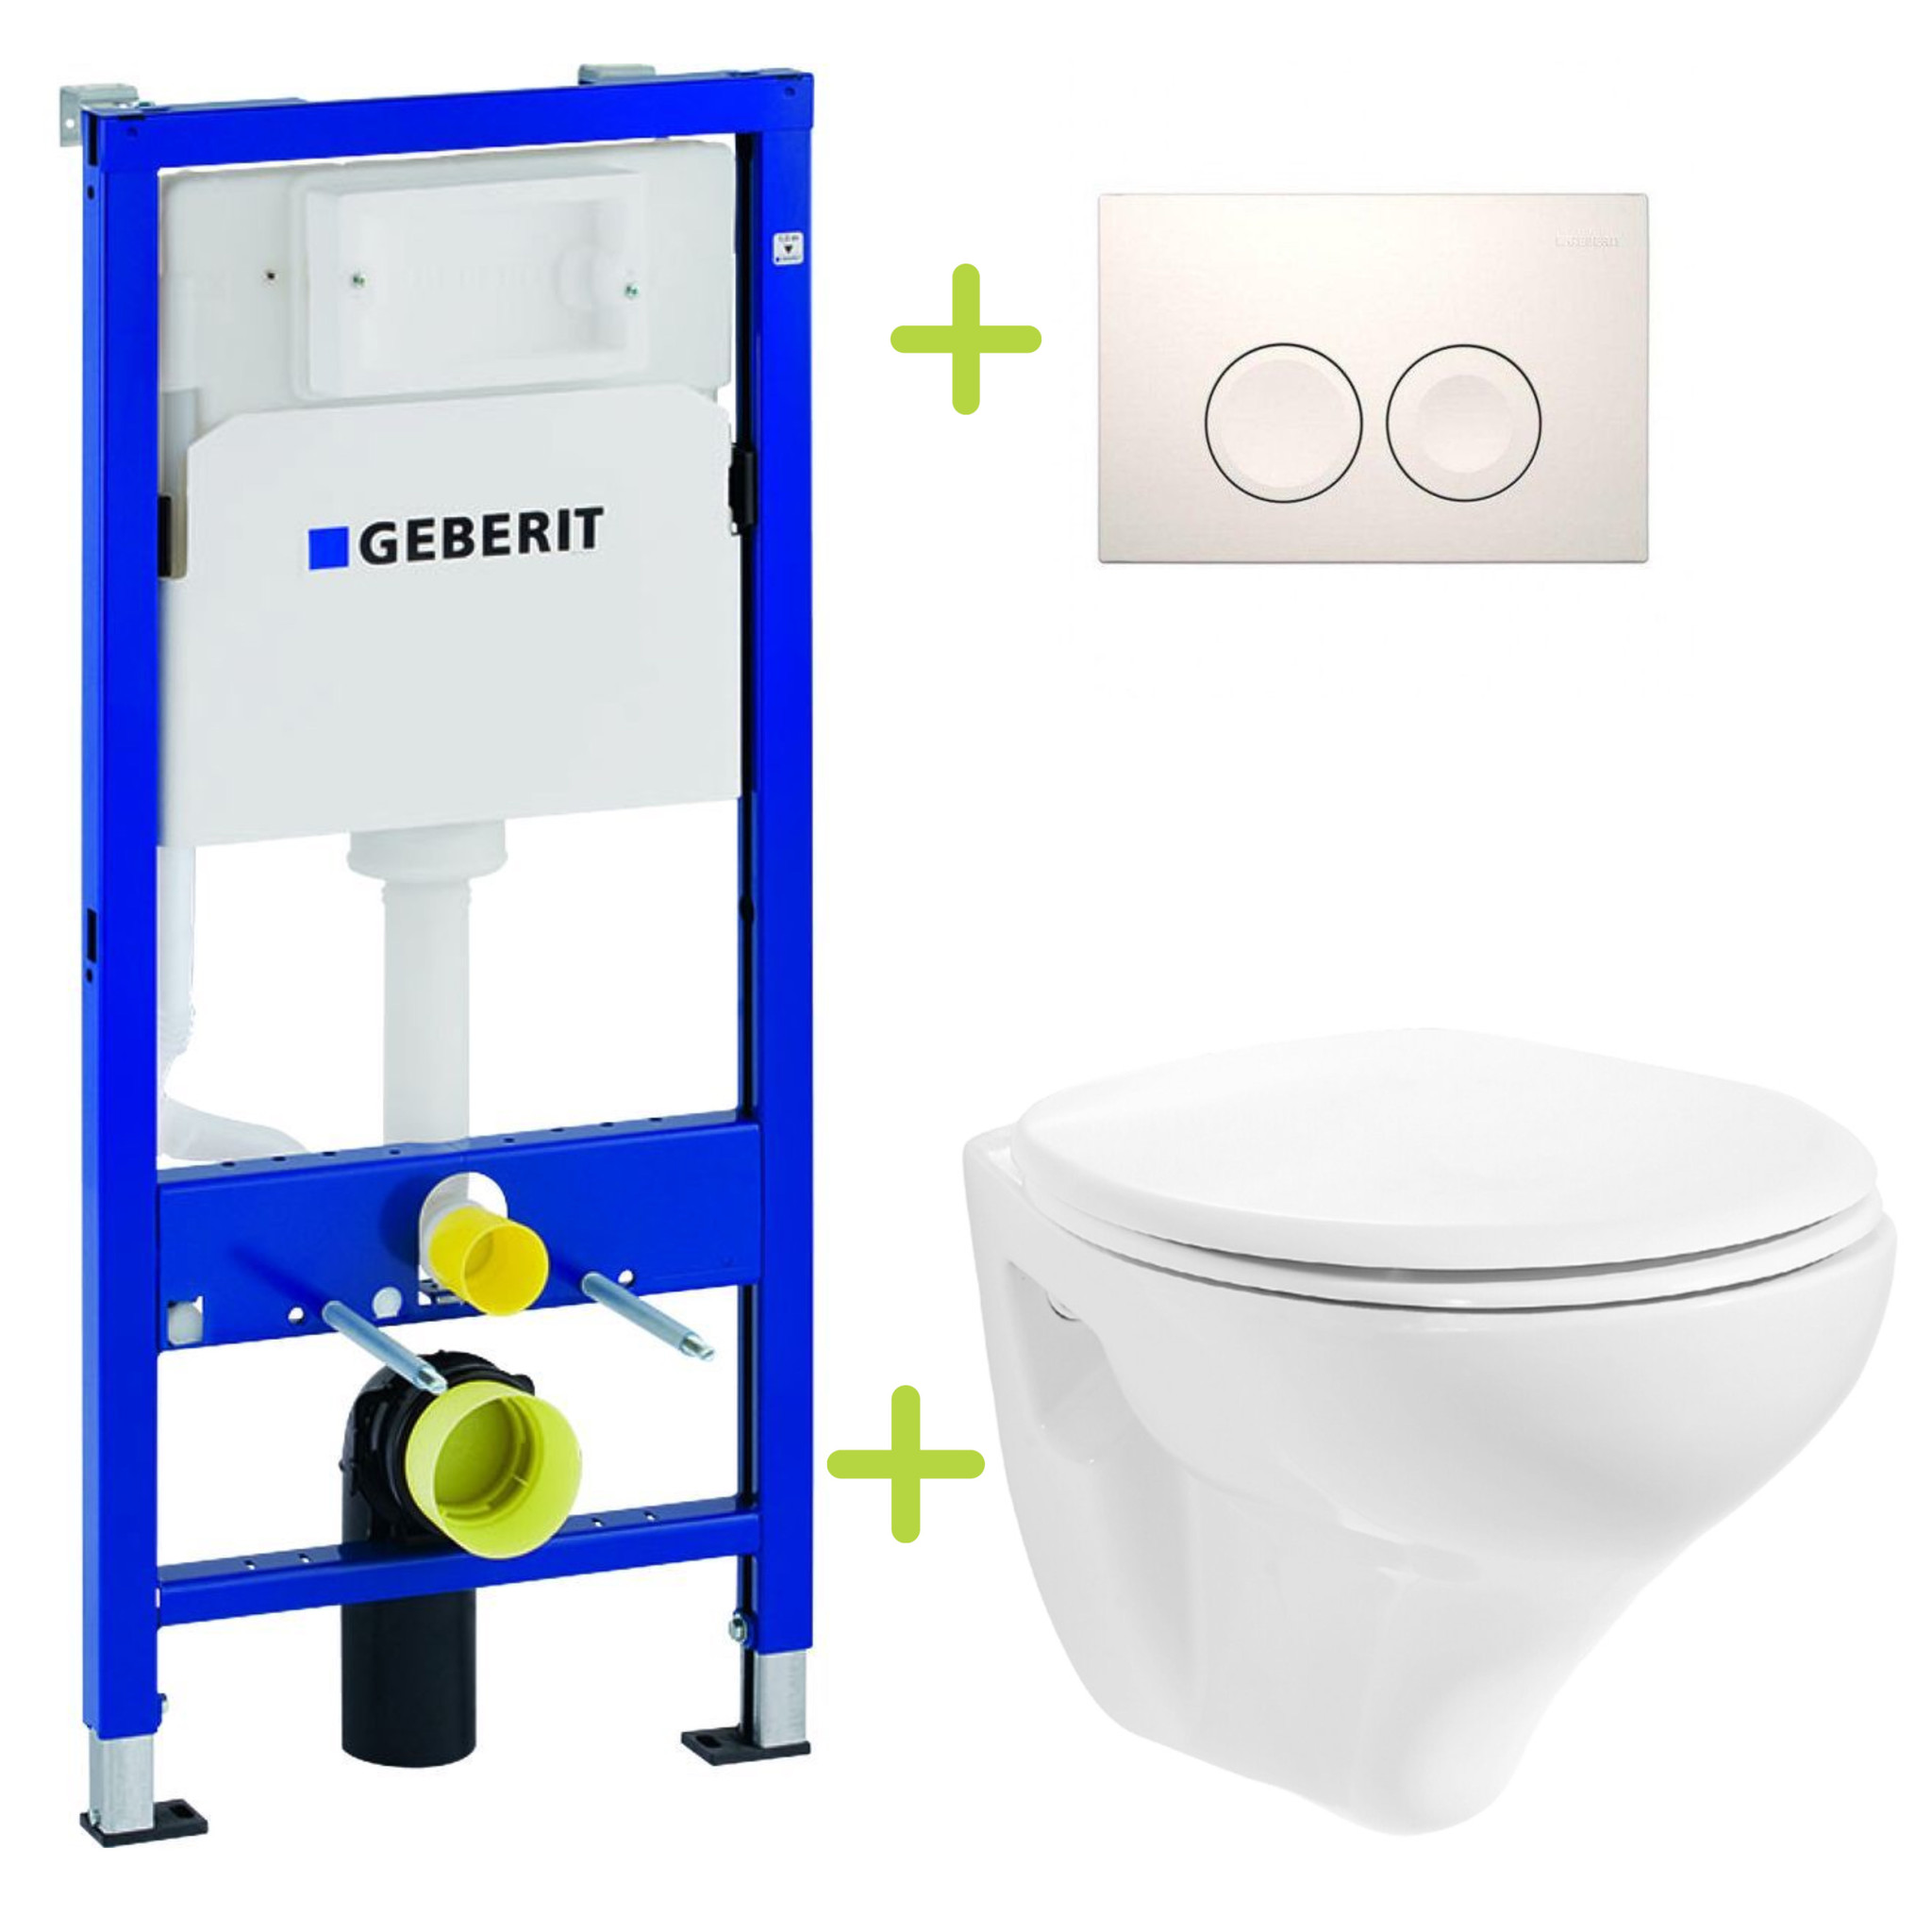 Dreigend Eervol breng de actie Aktieset Geberit UP100 Toiletset Basic Hangtoilet met bidet + Wc-bril